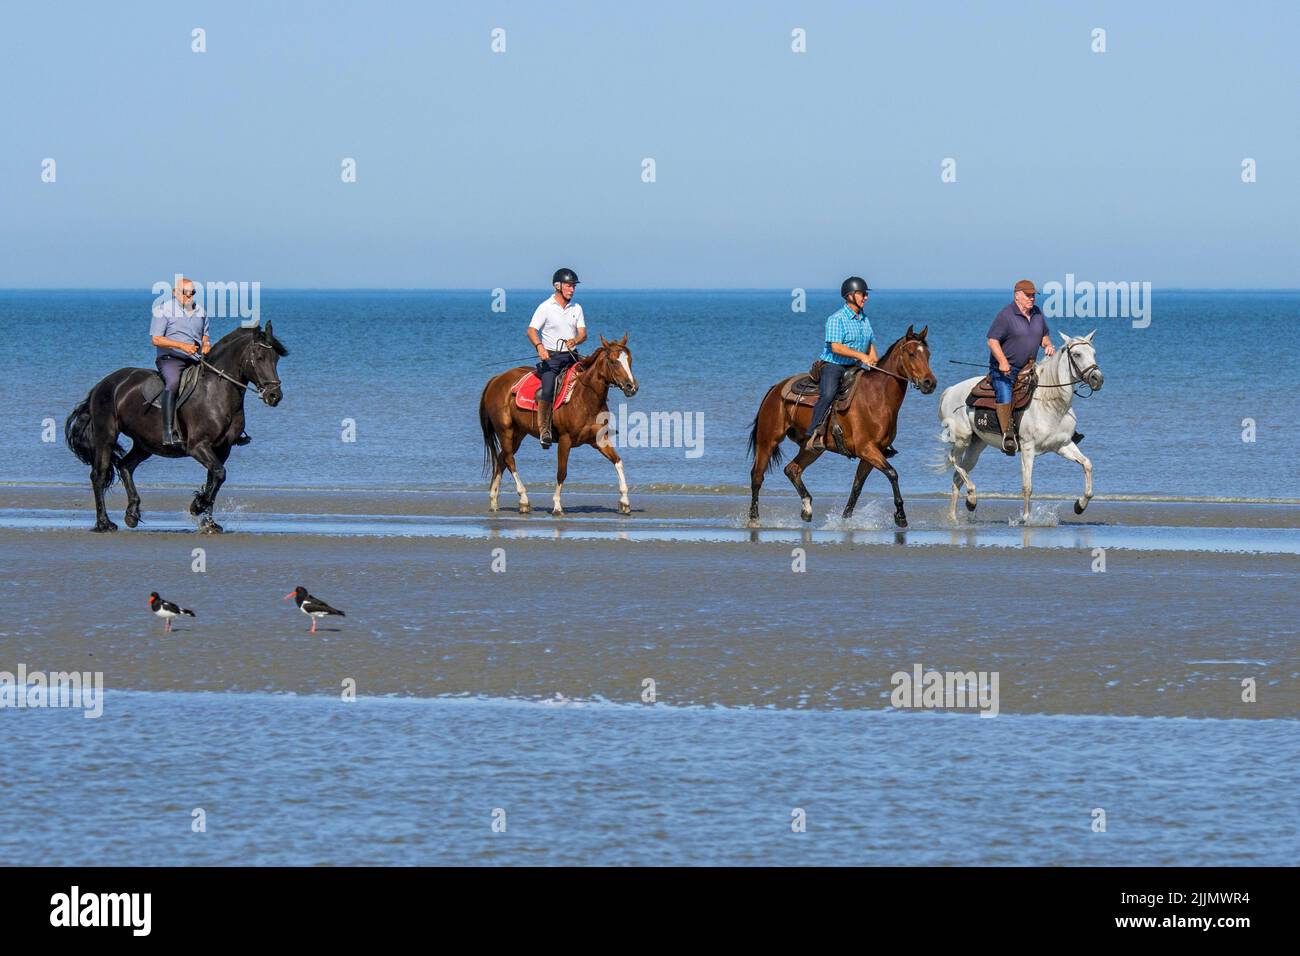 Cuatro jinetes mayores / ancianos / jinetes a caballo a caballo en la playa de arena a lo largo de la costa del Mar del Norte en verano Foto de stock